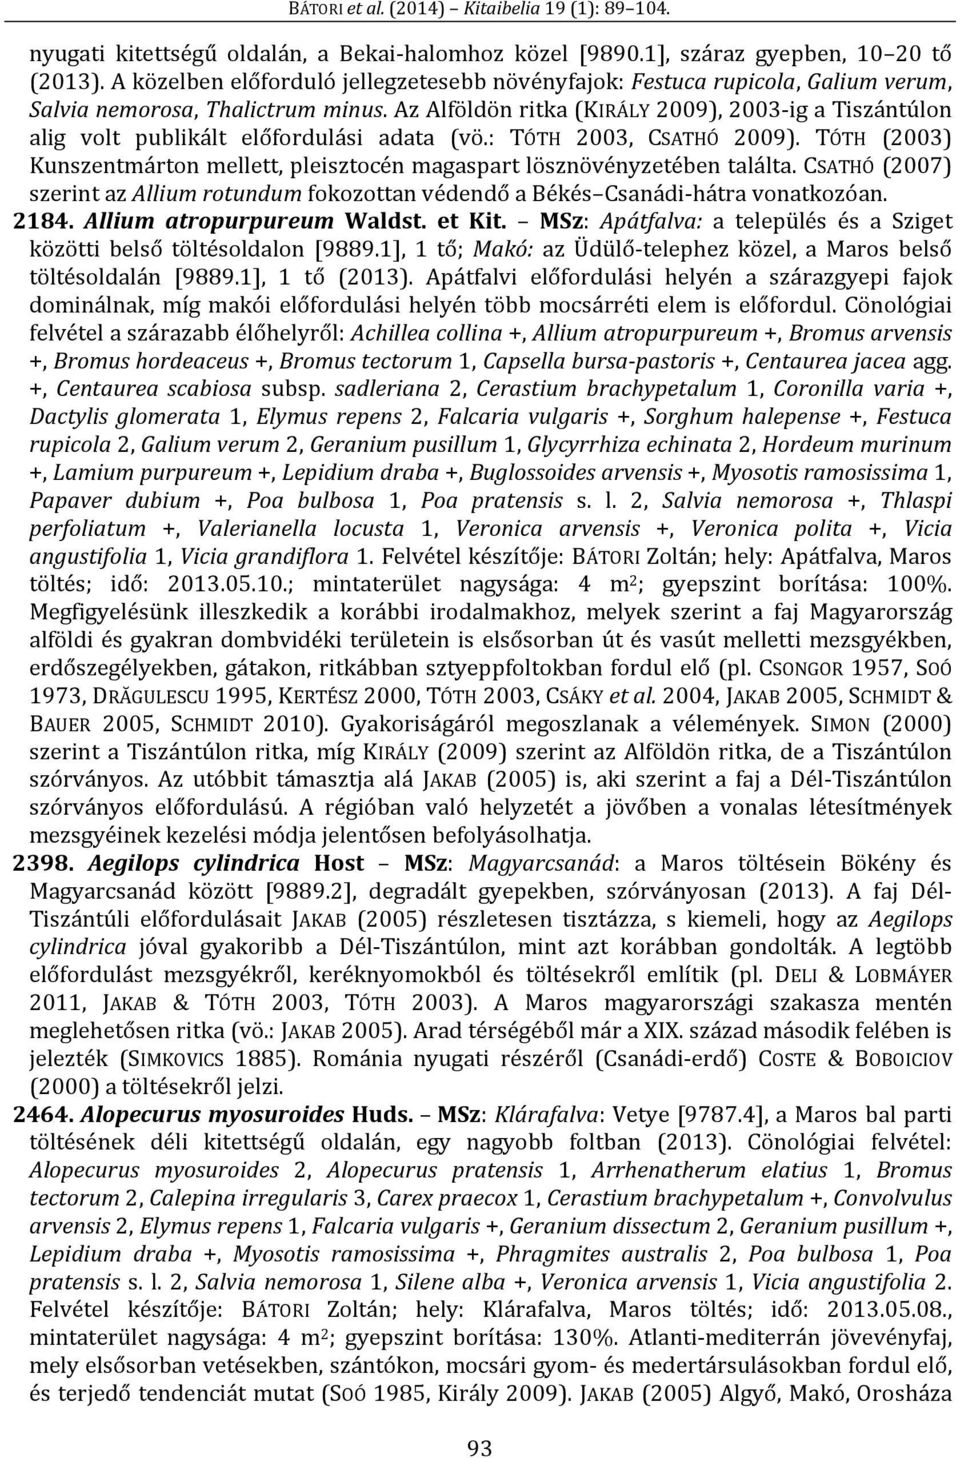 Az Alföldön ritka (KIRÁLY 2009), 2003-ig a Tiszántúlon alig volt publikált előfordulási adata (vö.: TÓTH 2003, CSATHÓ 2009).